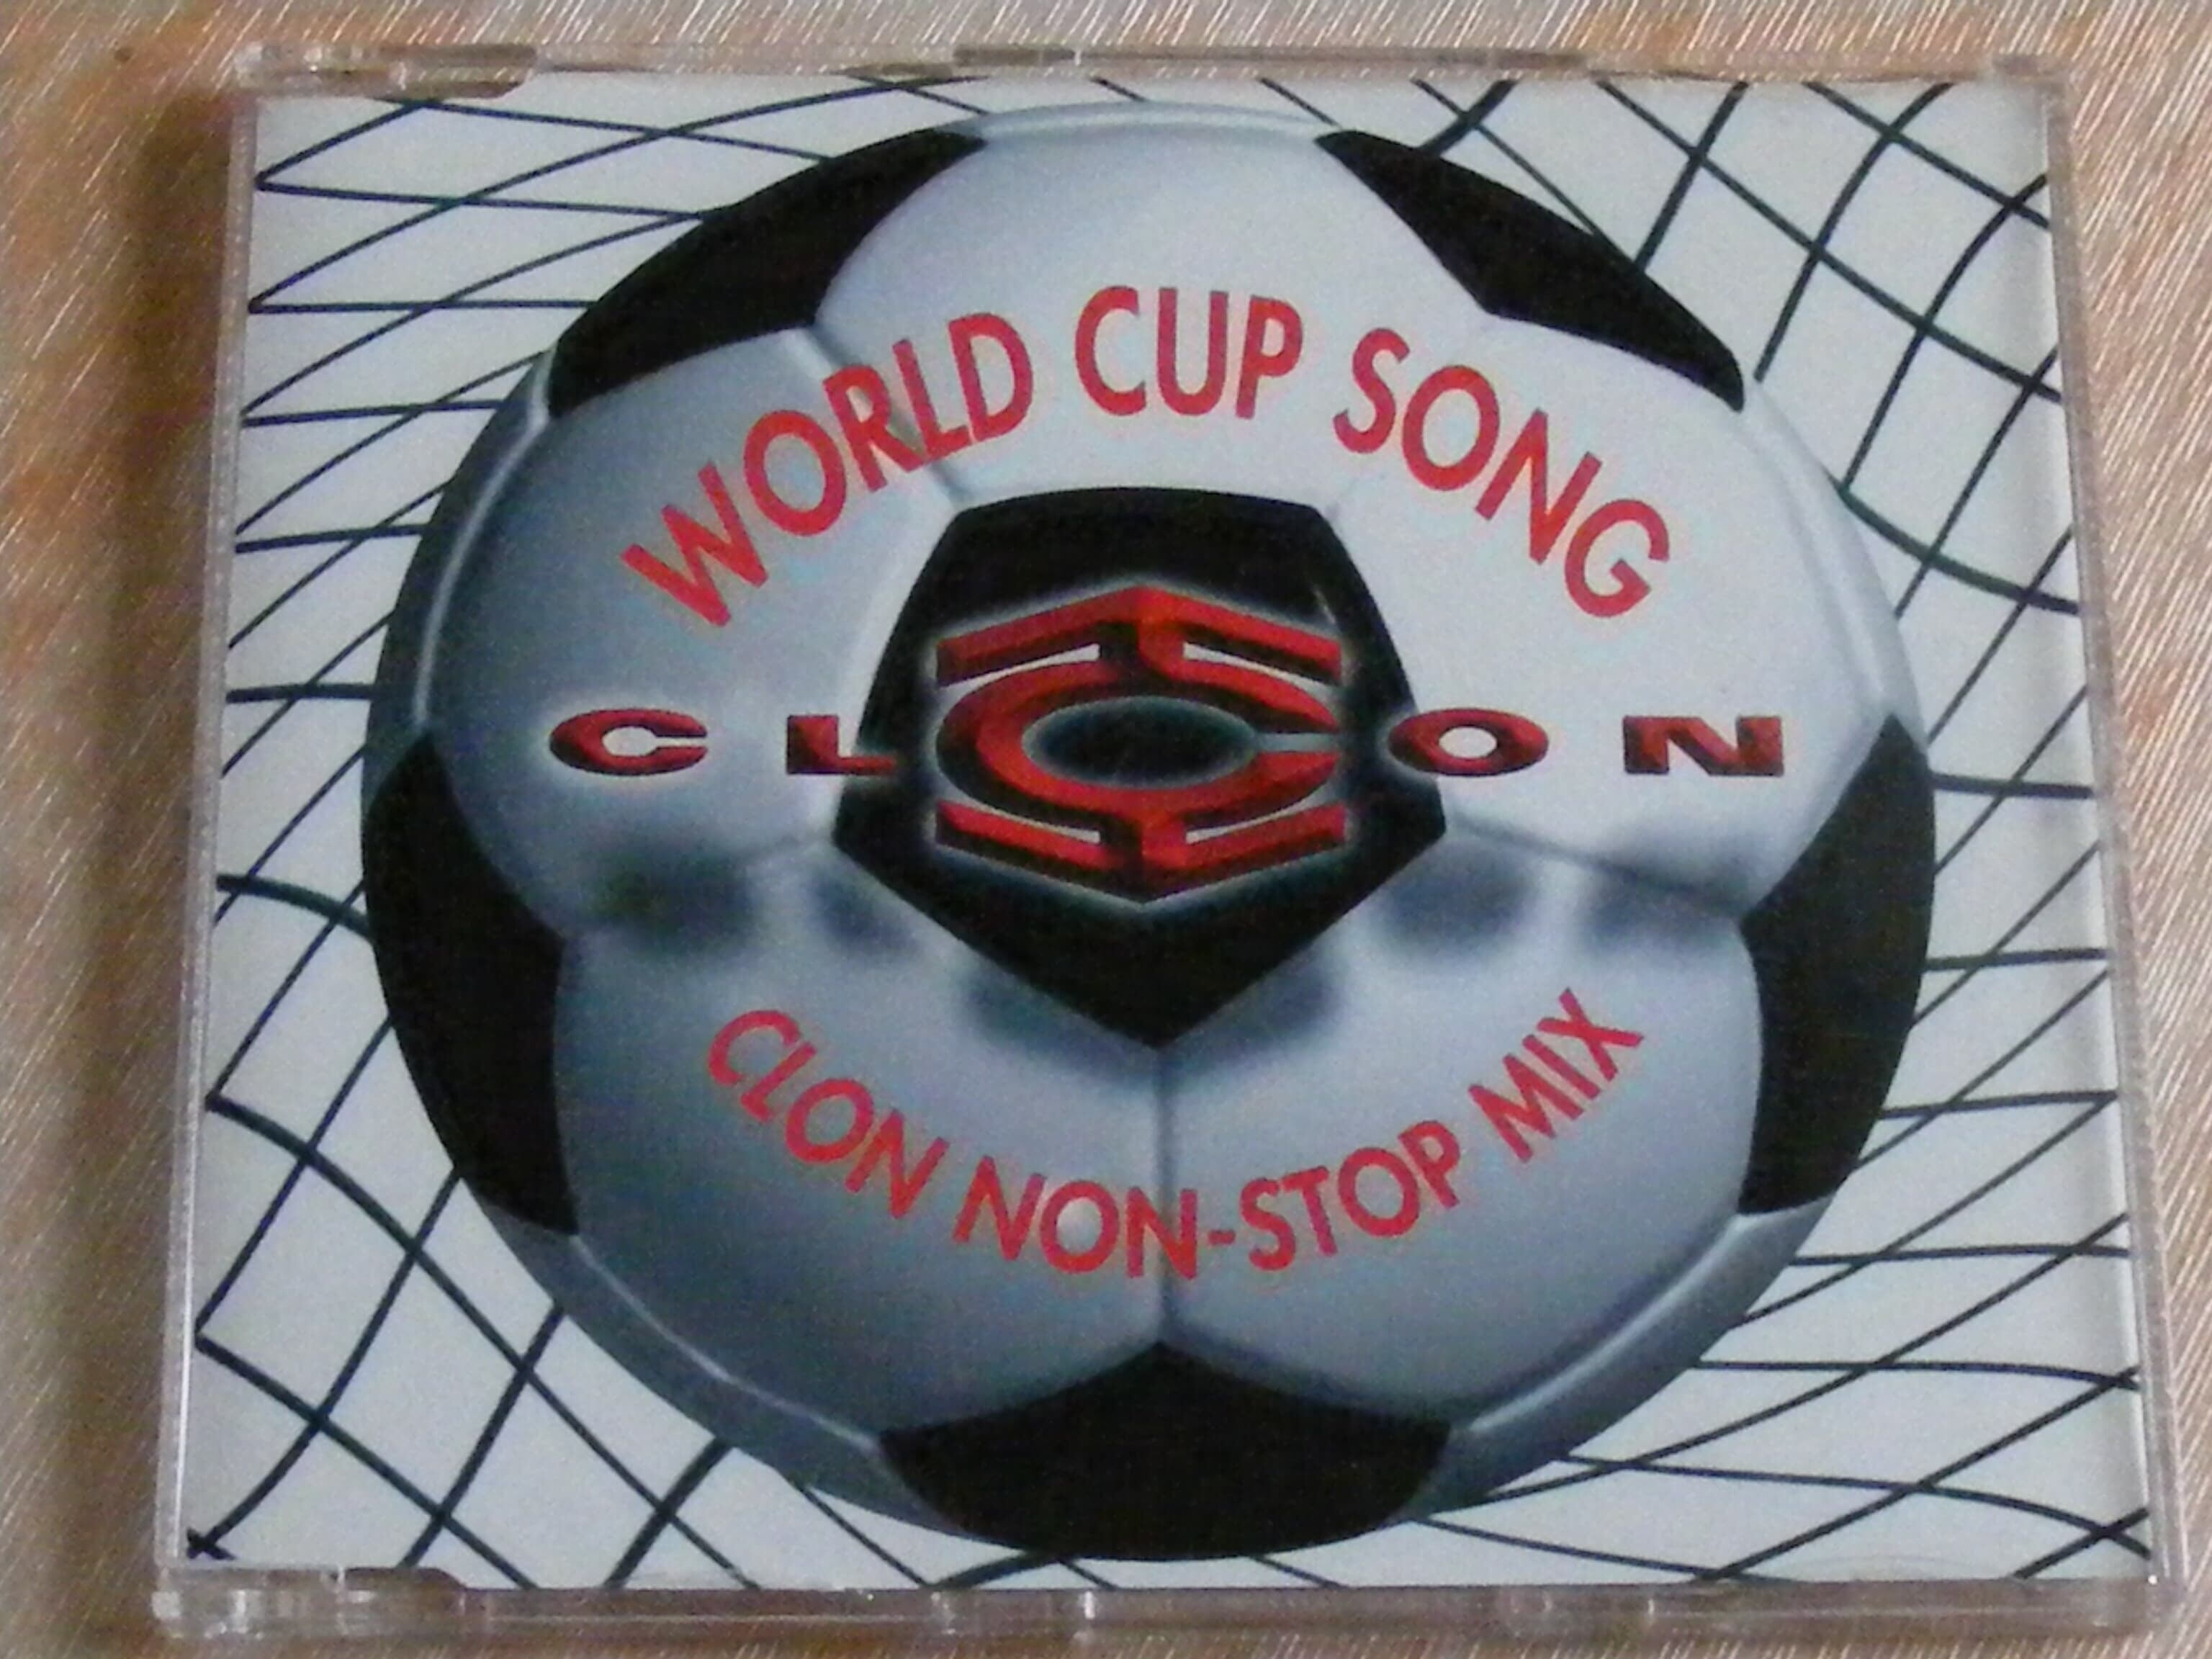 클론(Clon) - World Cup Song